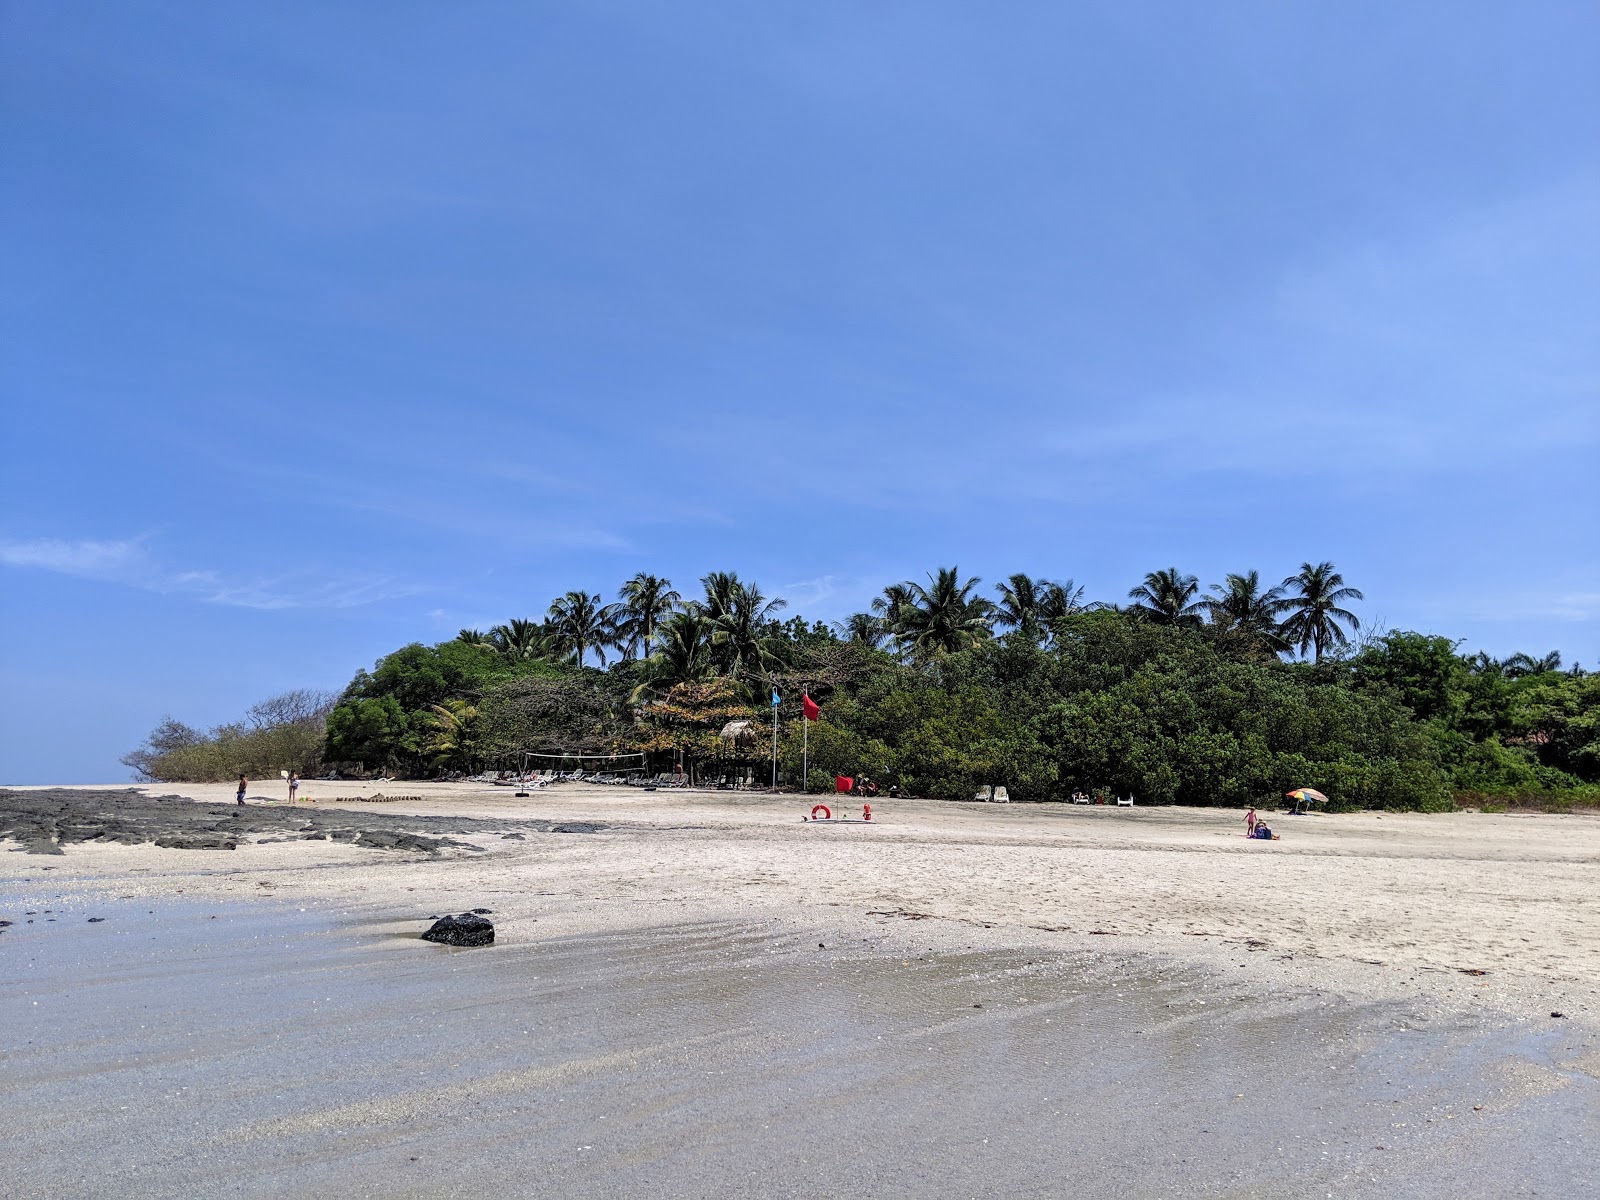 Foto af Playa Langosta - populært sted blandt afslapningskendere